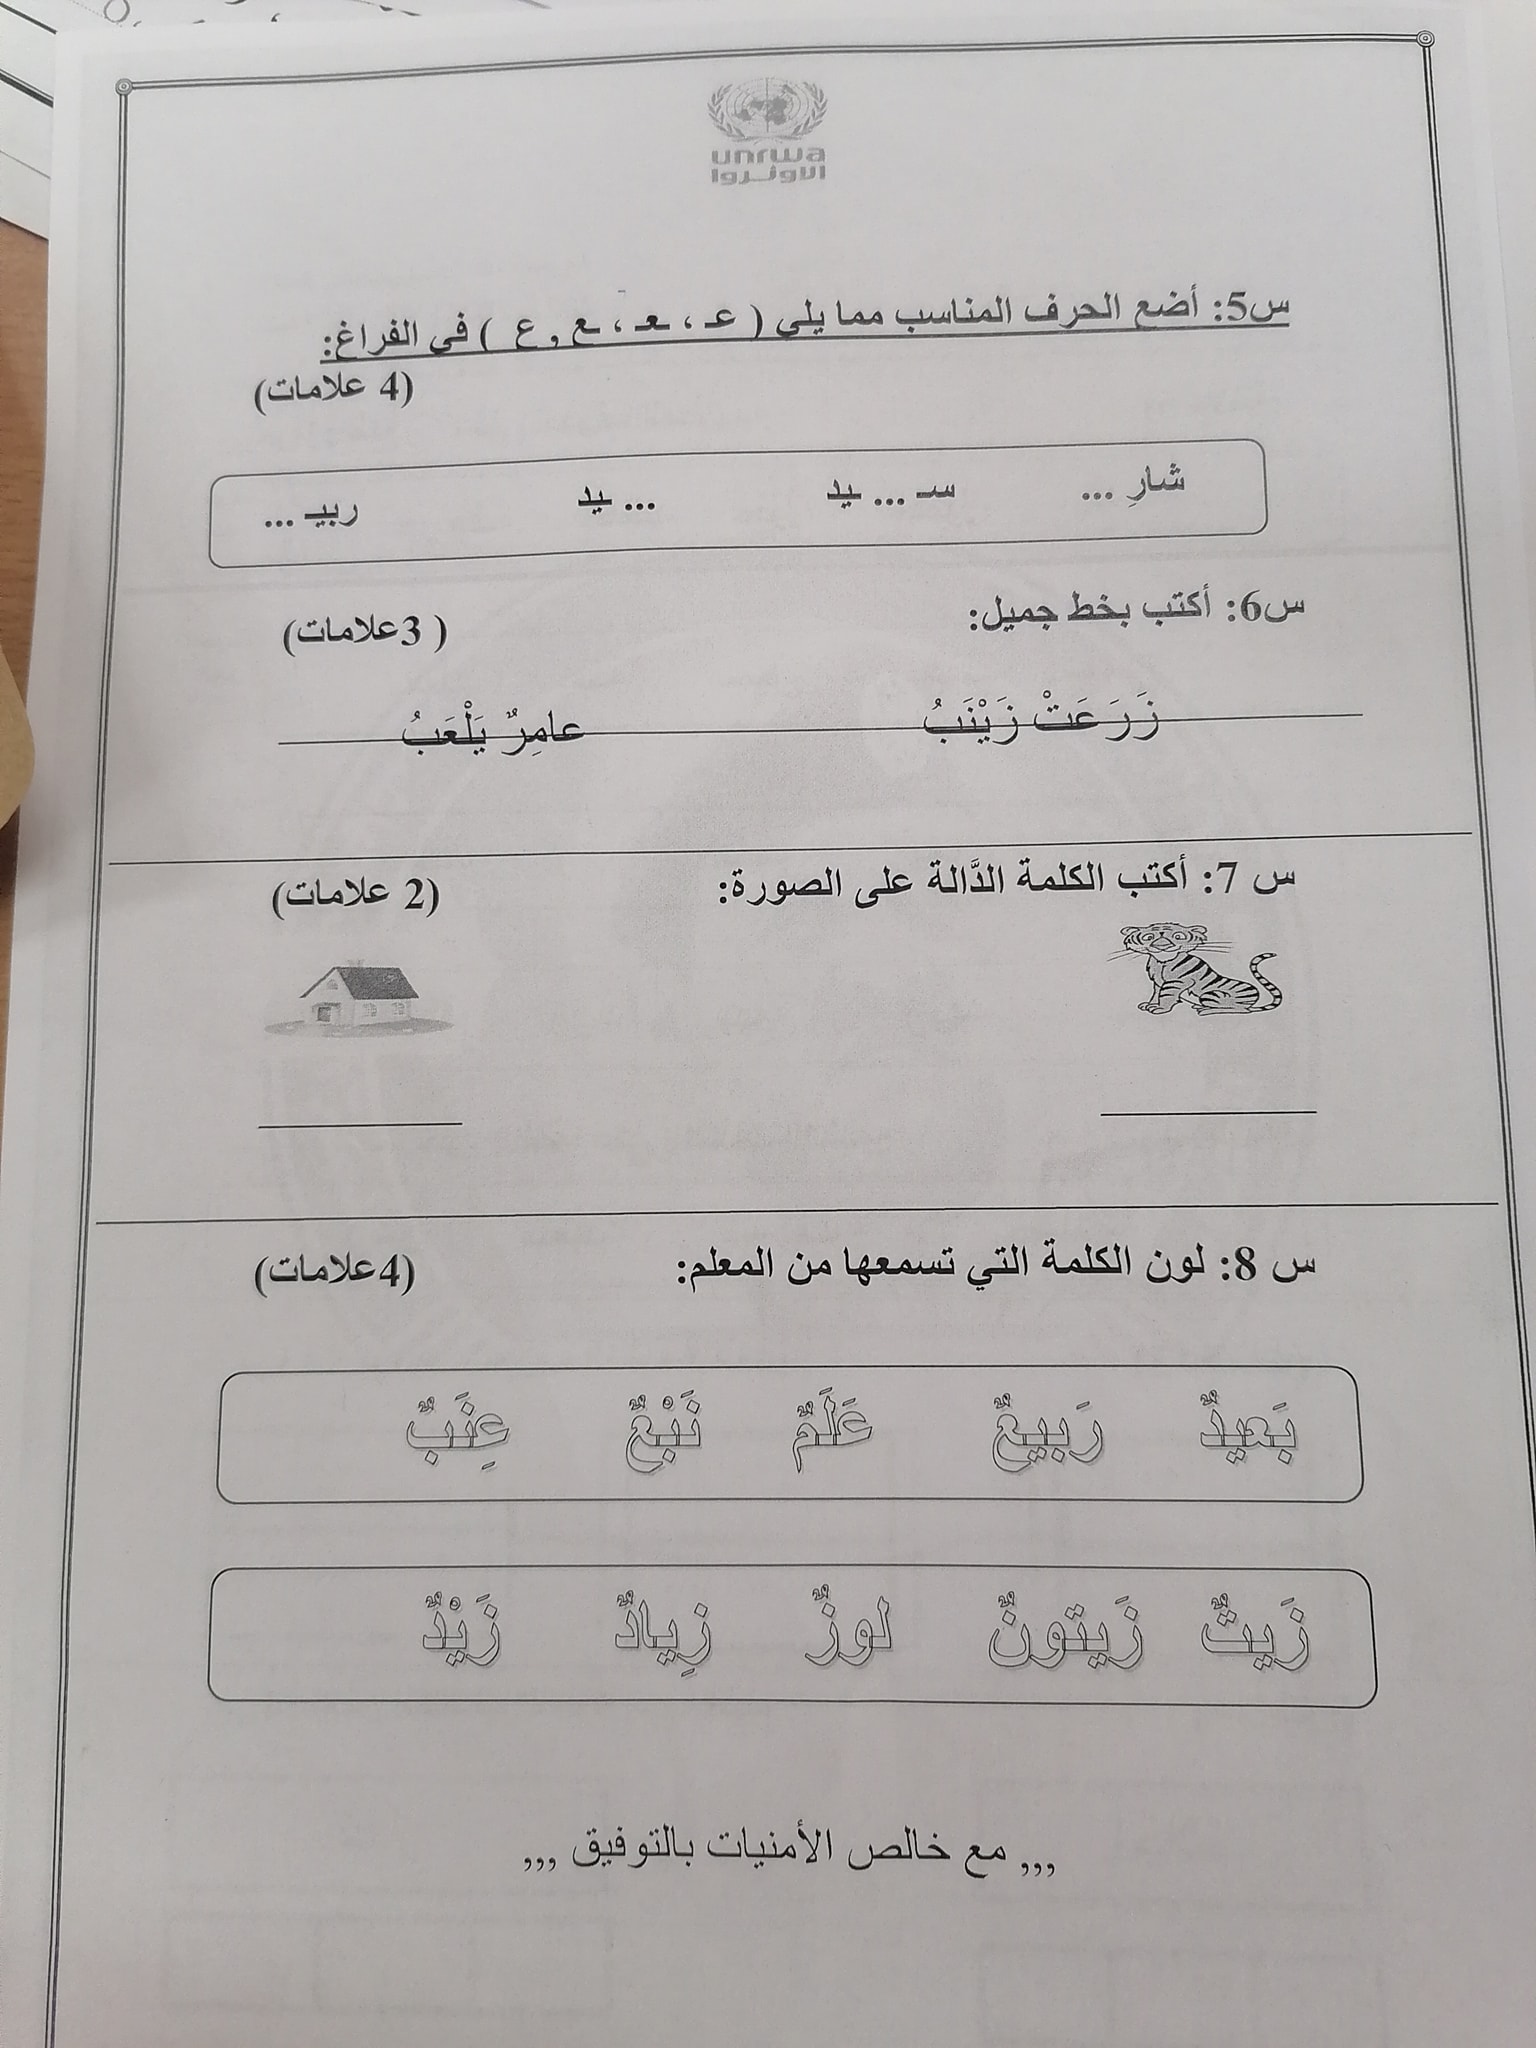 بالصور امتحان لغة عربية نهائي للصف الاول الفصل الاول 2021